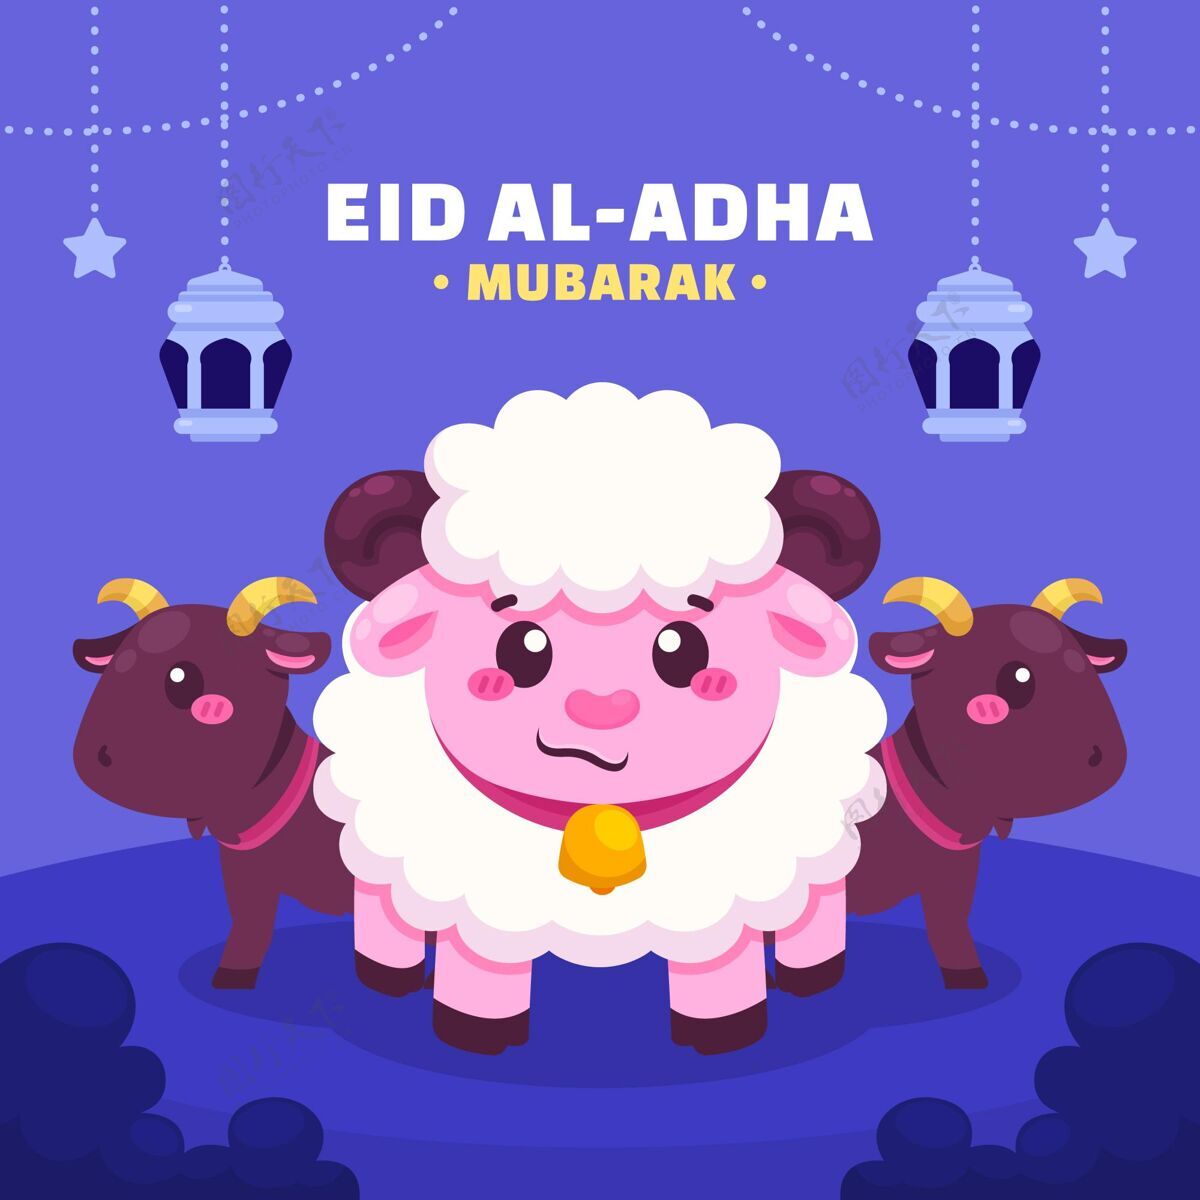 伊斯兰卡通宰牲节插画eidal-adhamubarakBigeid绵羊